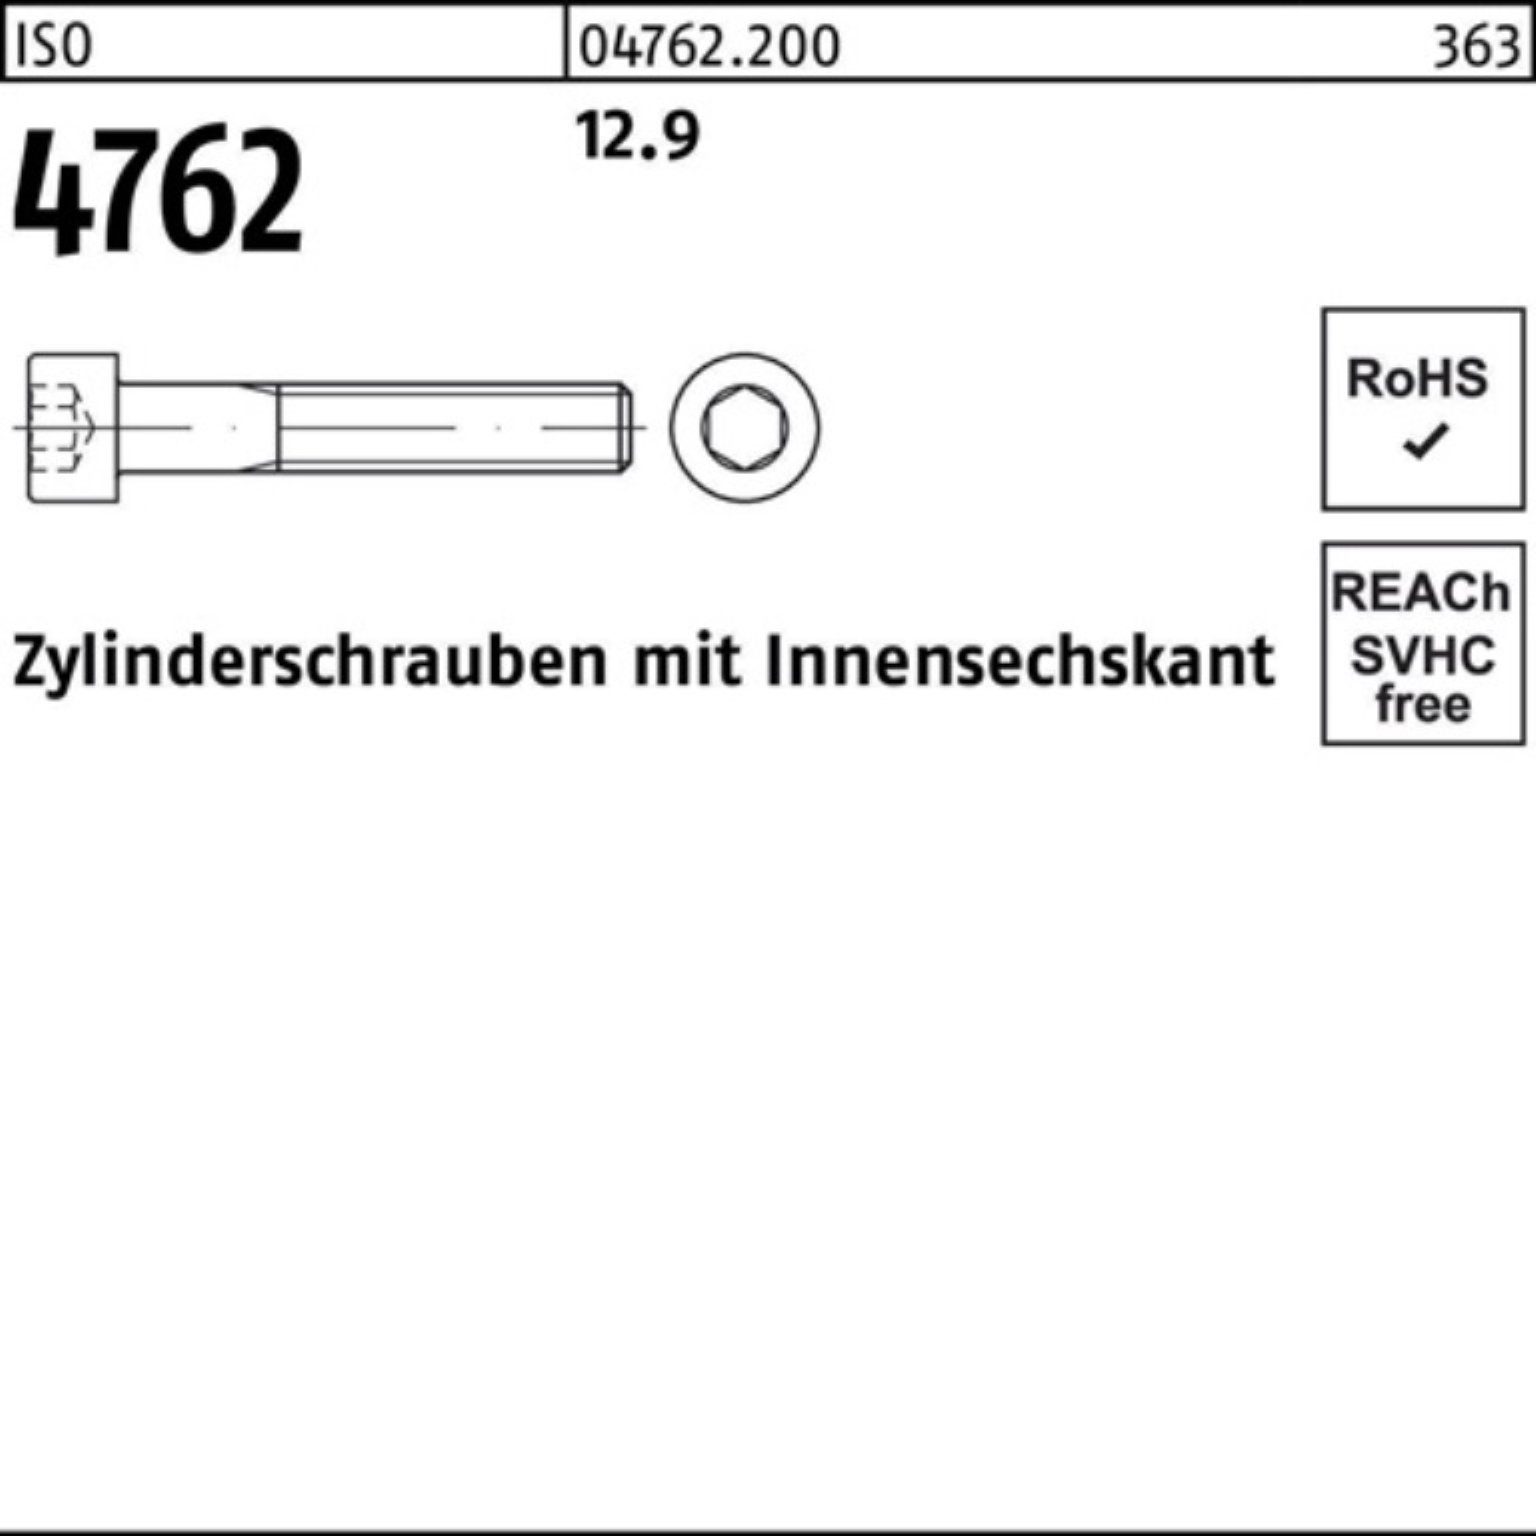 Innen-6kt 100er Zylinderschraube 1 12.9 Stück I Reyher ISO Zylinderschraube 4762 M33x 90 Pack